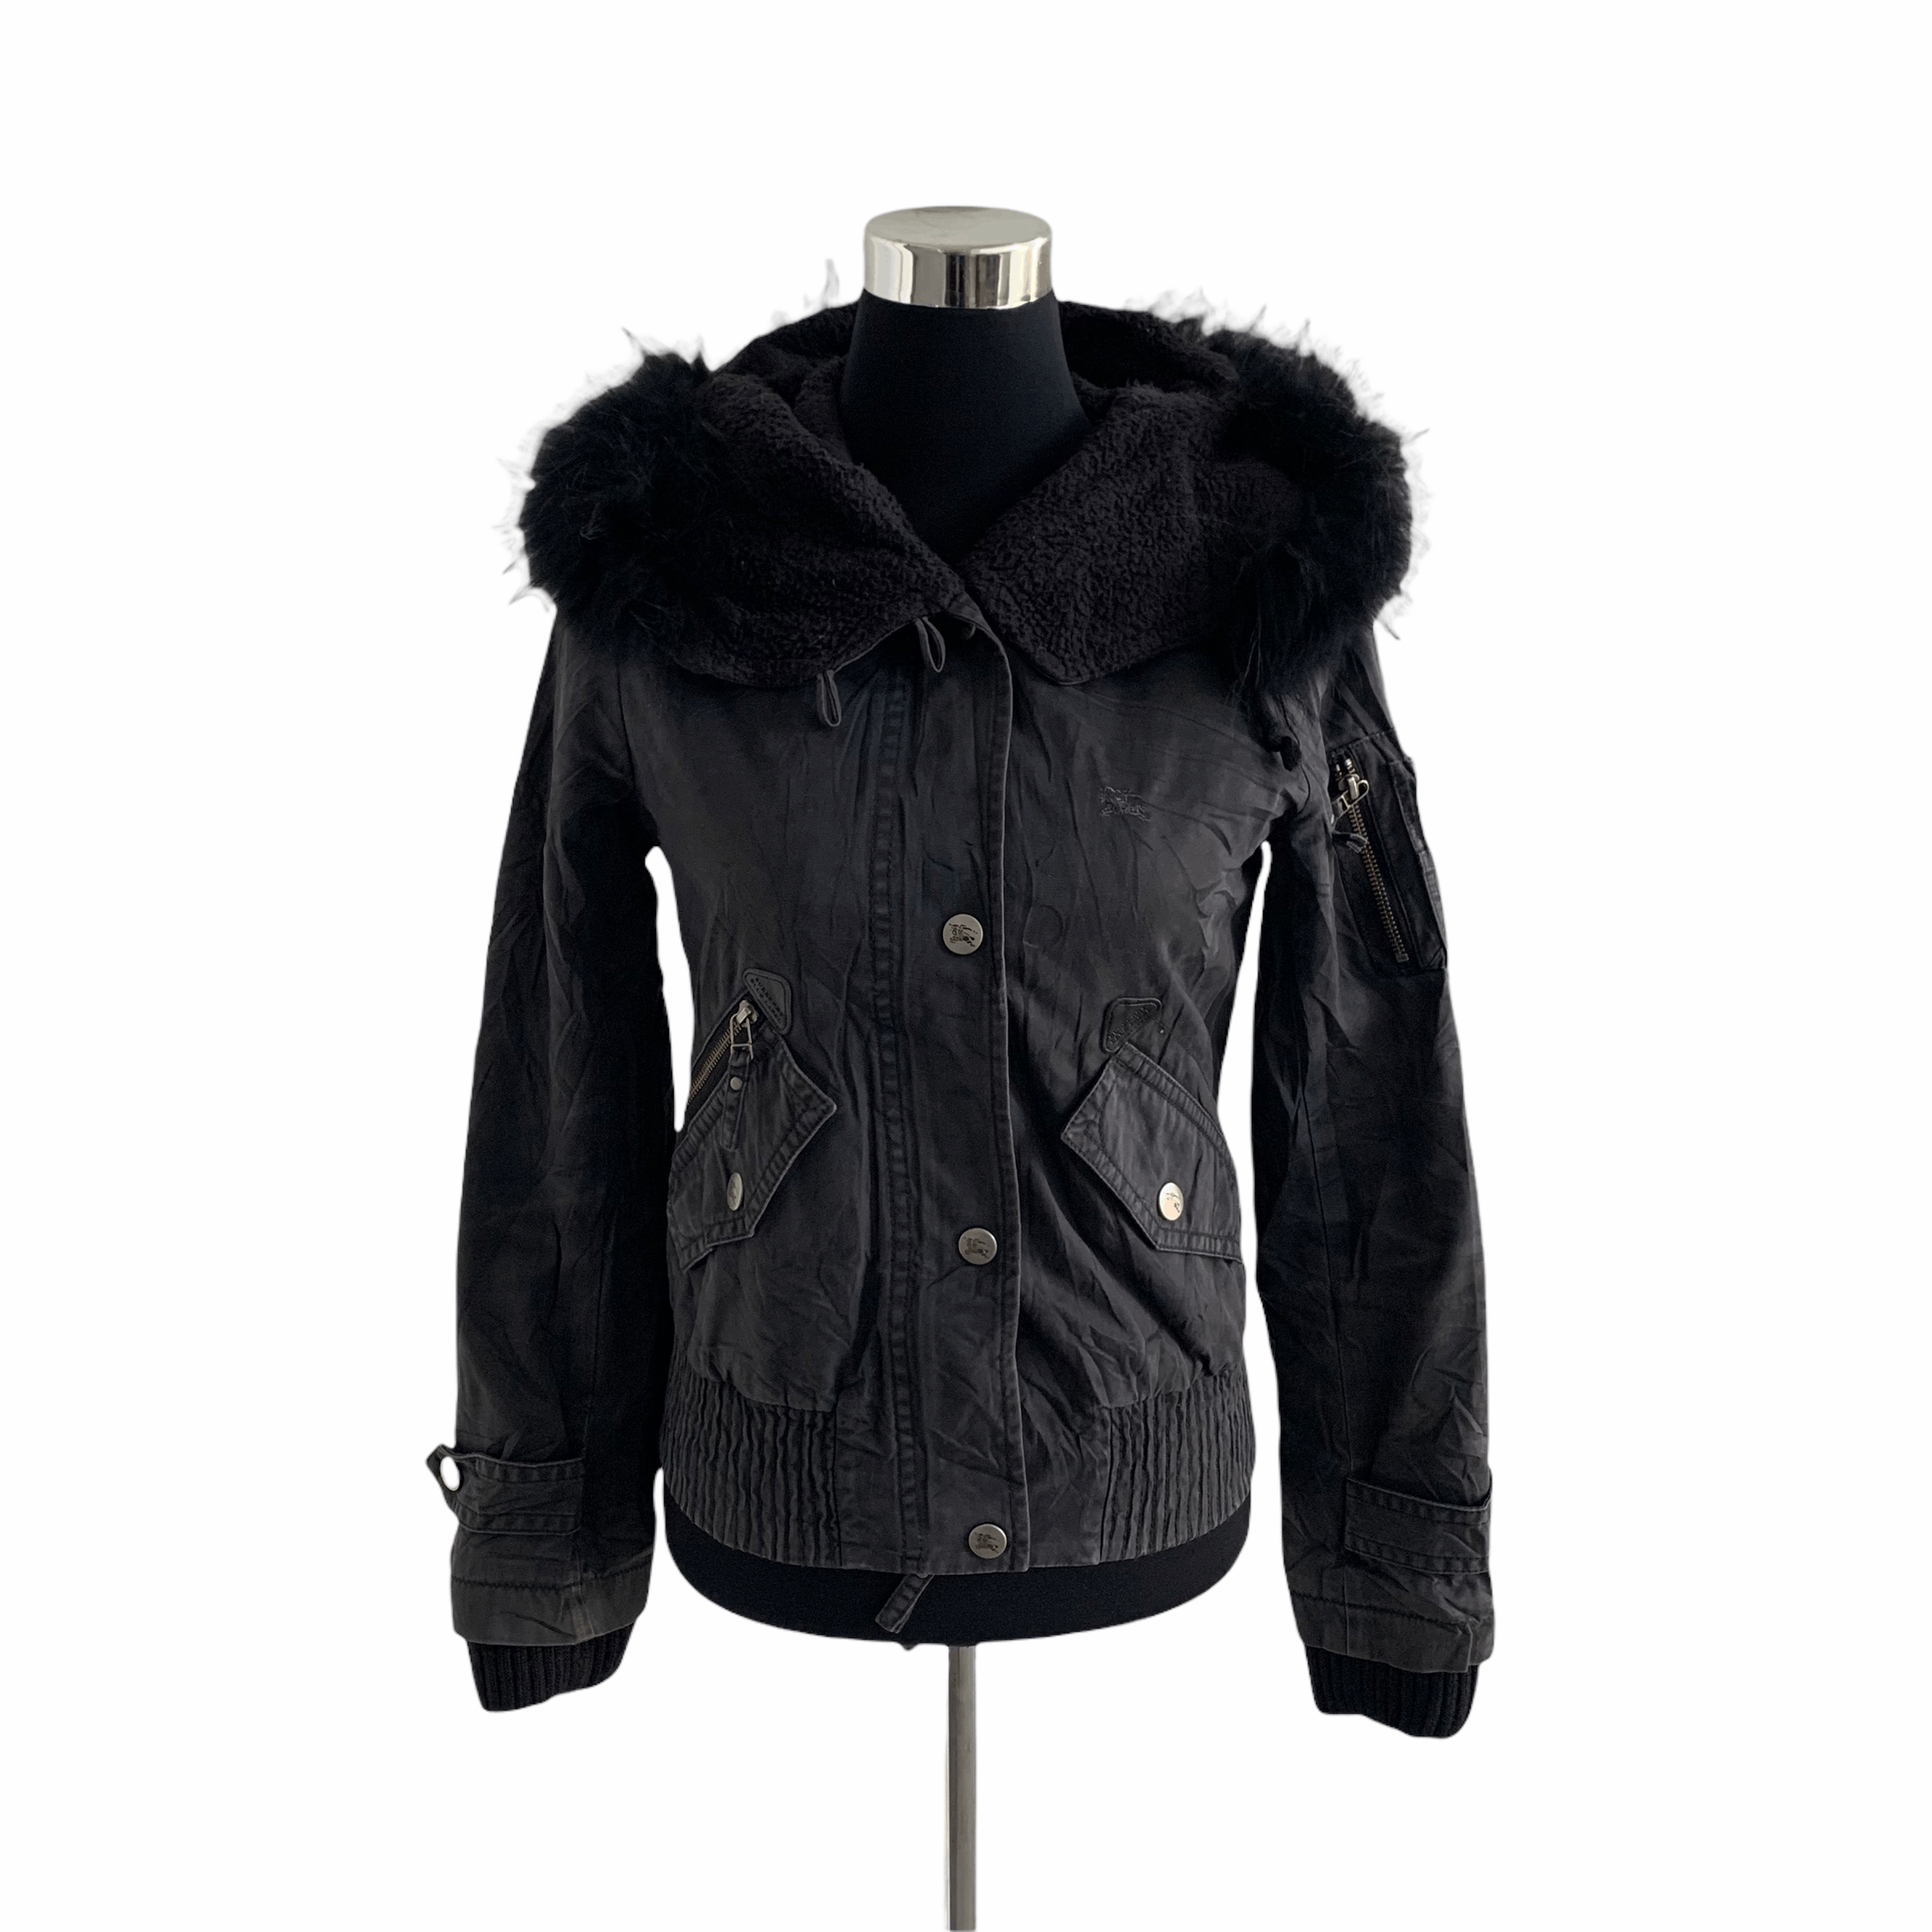 Burberry Blue Label Fur Hoodie Crop Jacket #3298-42 - 1